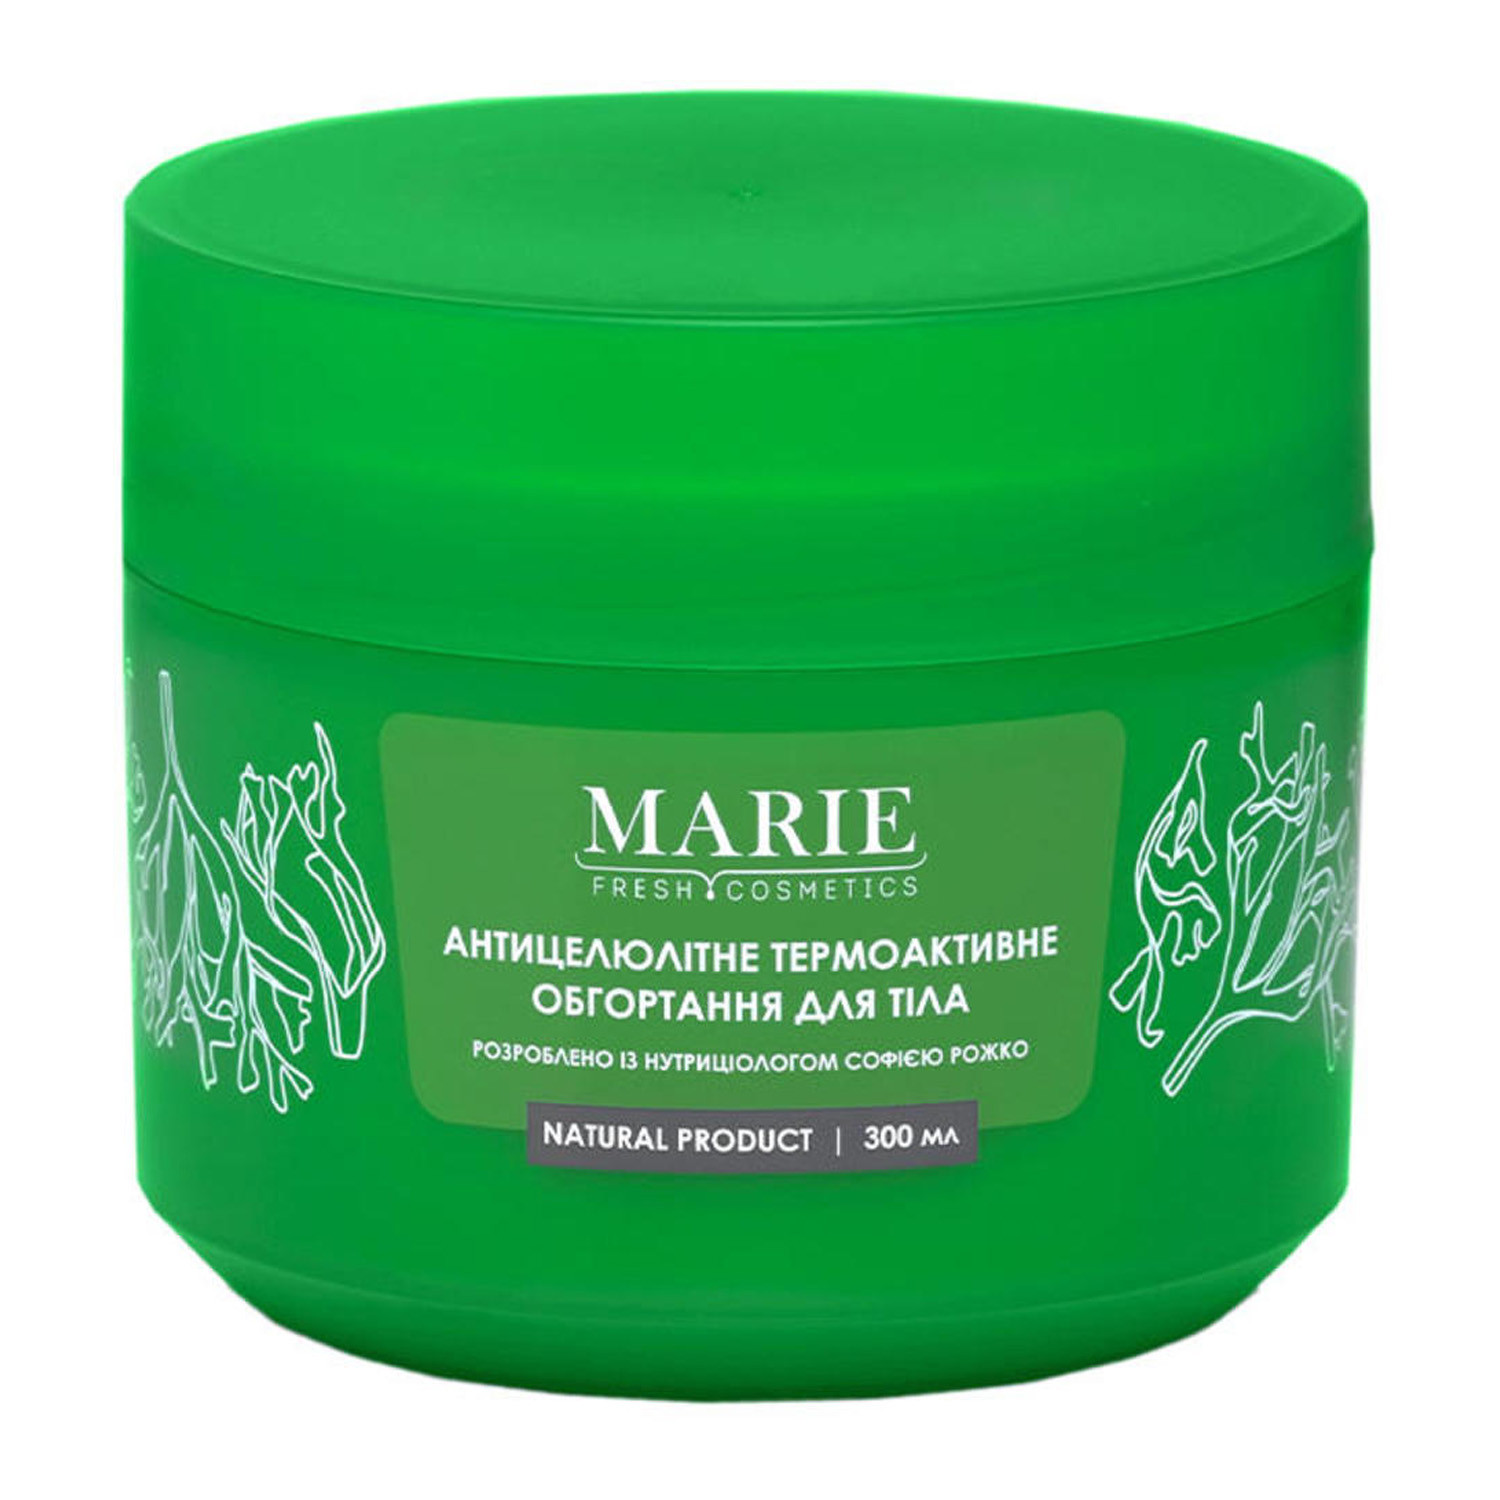 Marie Fresh Cosmetics - Антицелюлітне термоактивне обгортання для тіла